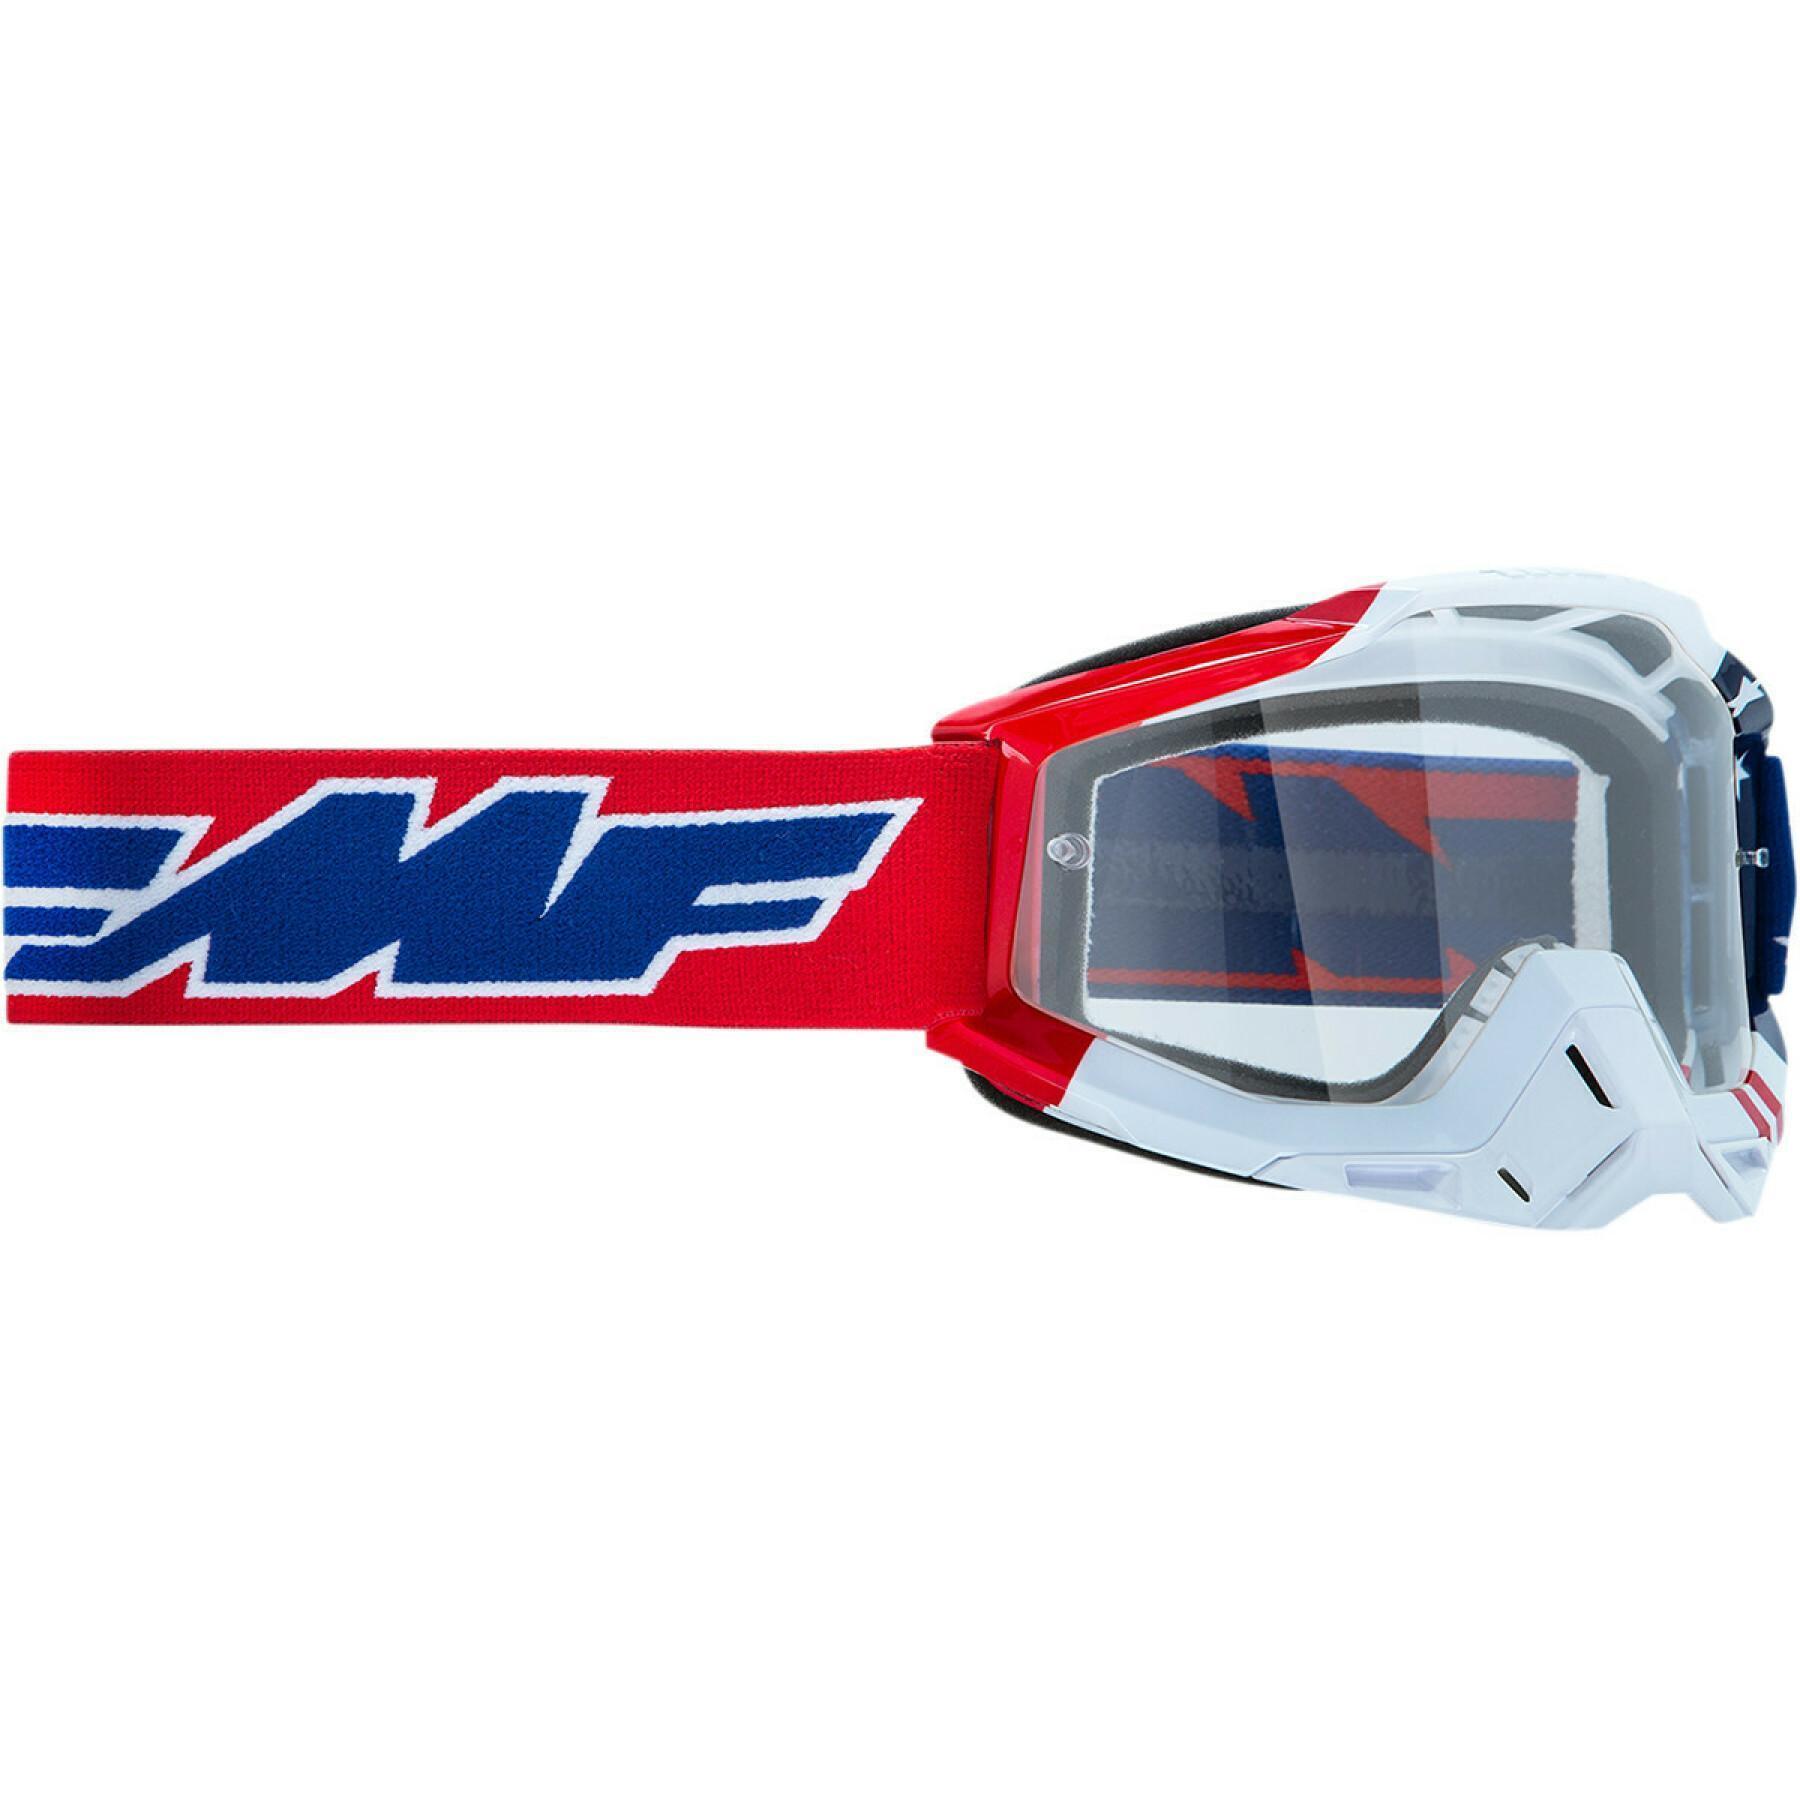 Gafas de cross para moto FMF Vision us of a clr